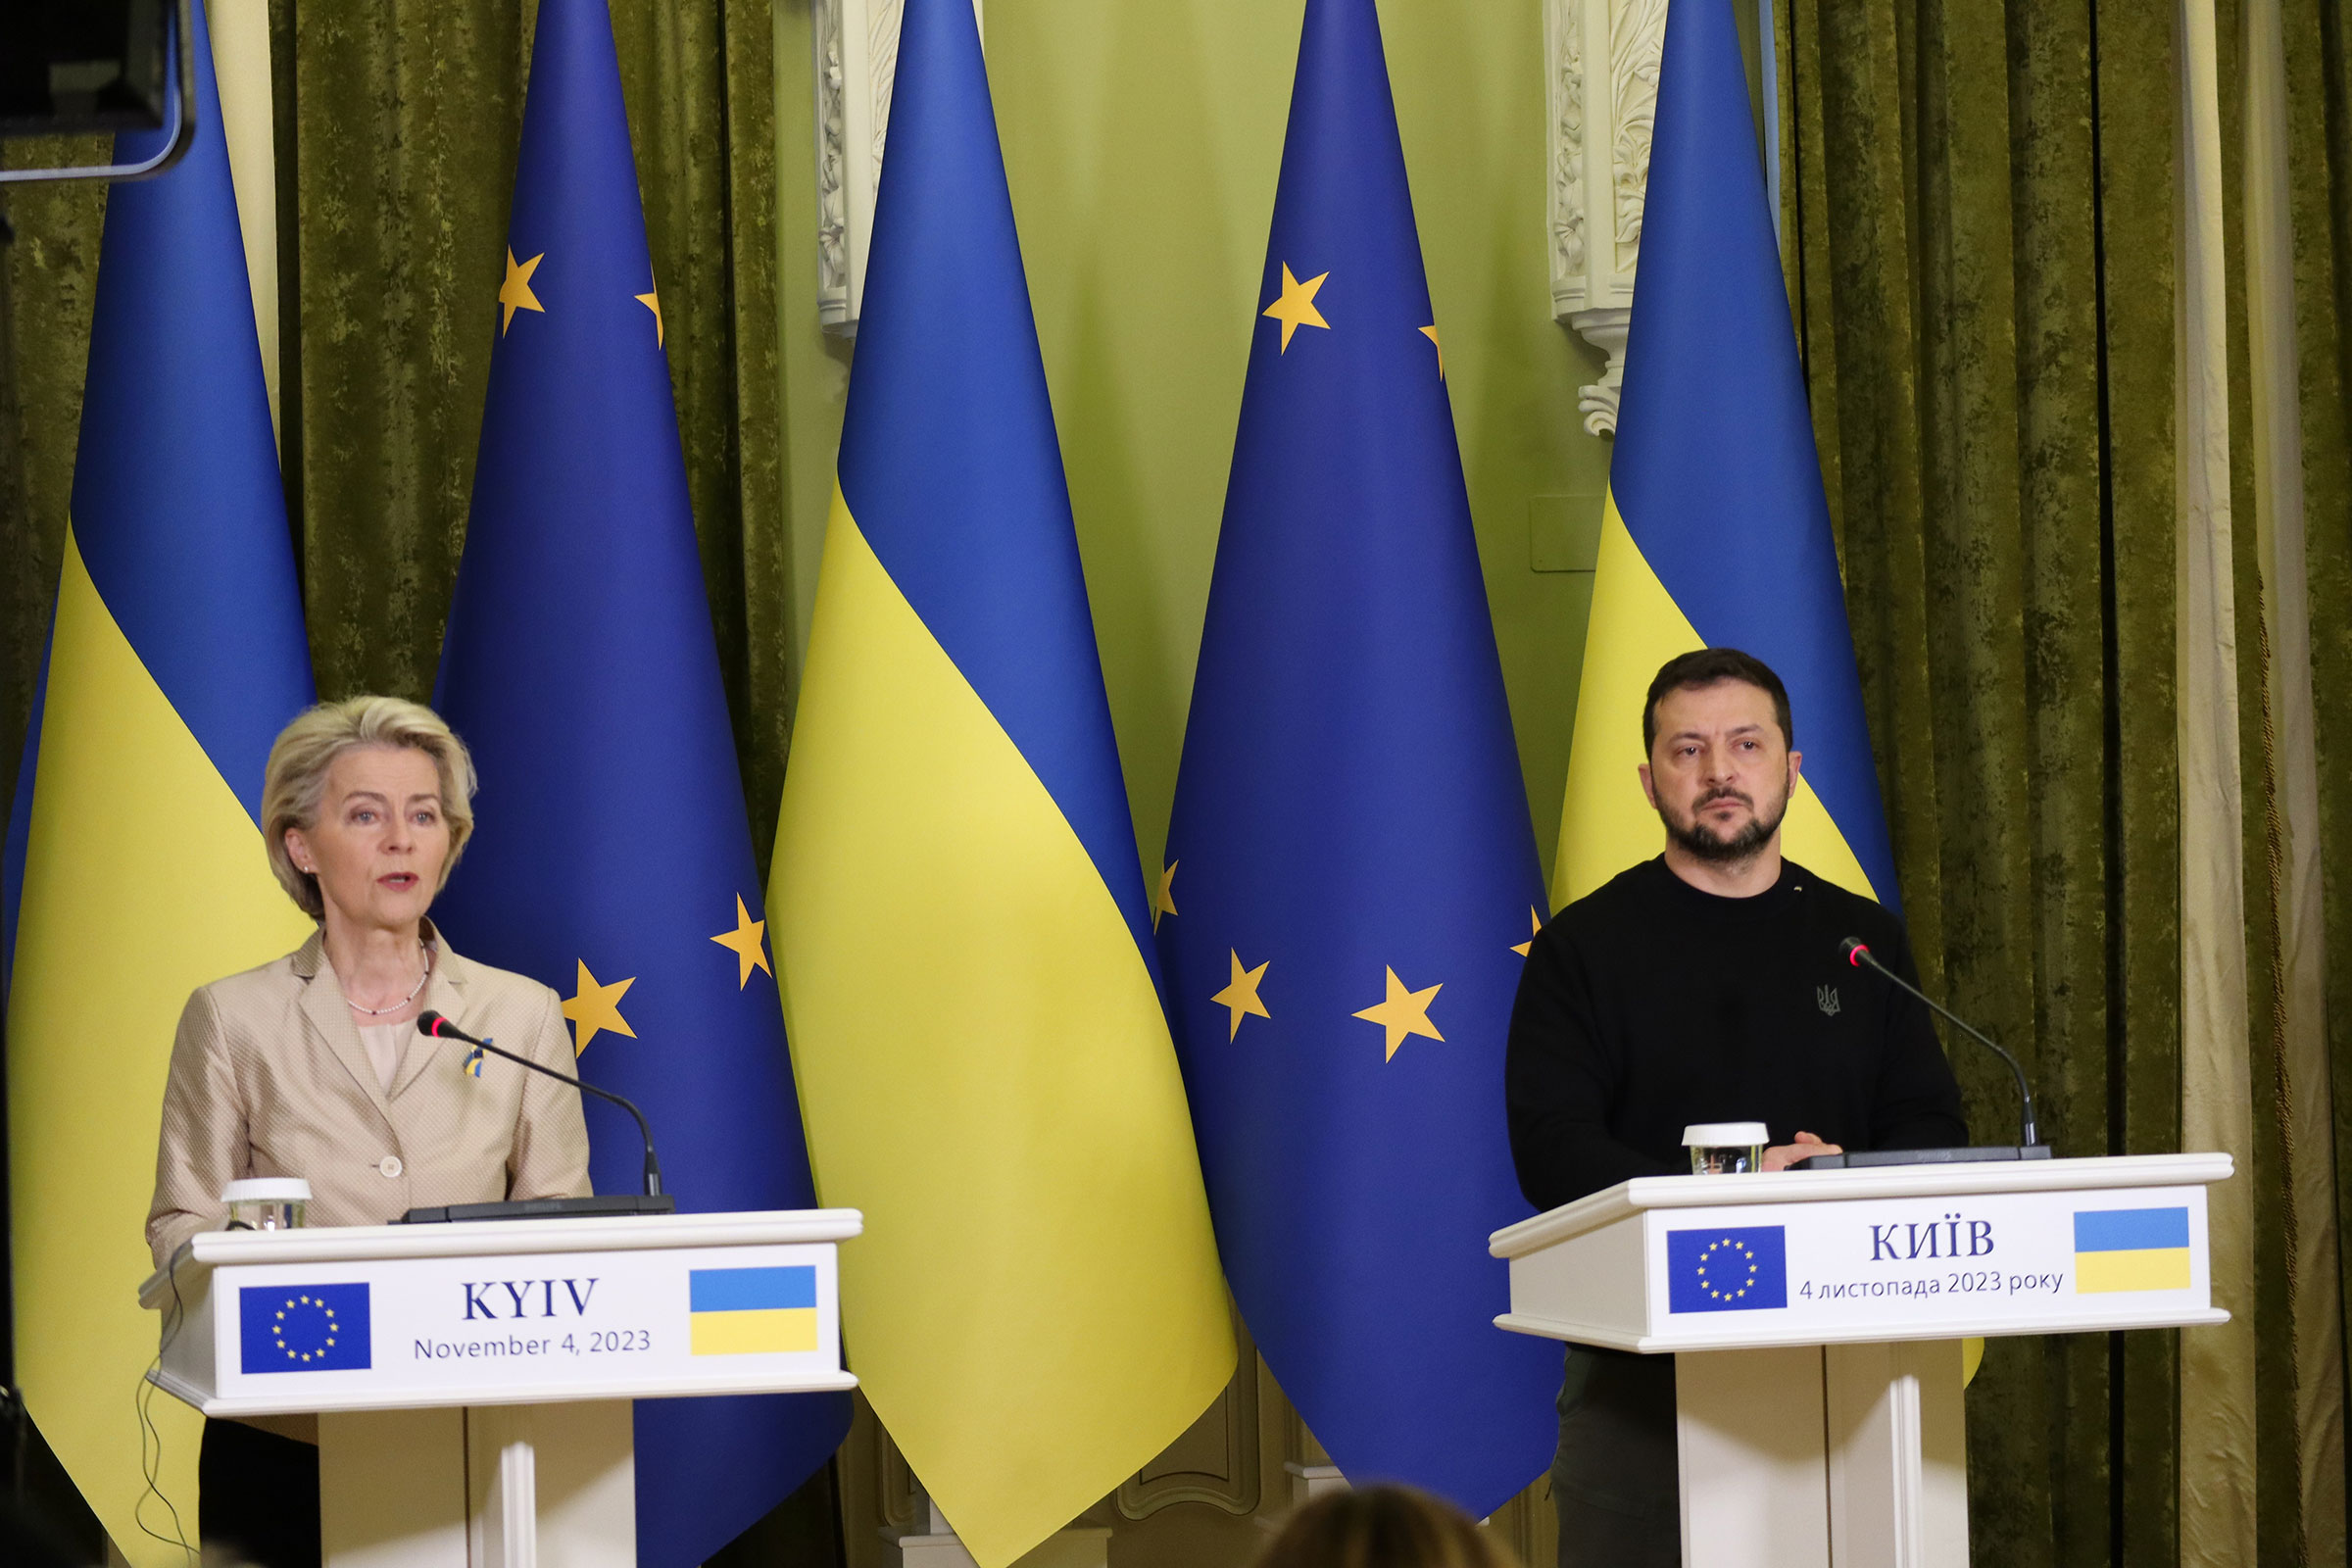 In this November 4 photo, Ursula von der Leyen and Volodymyr Zelenskyi speak during joint press conference in Kyiv, Ukraine.